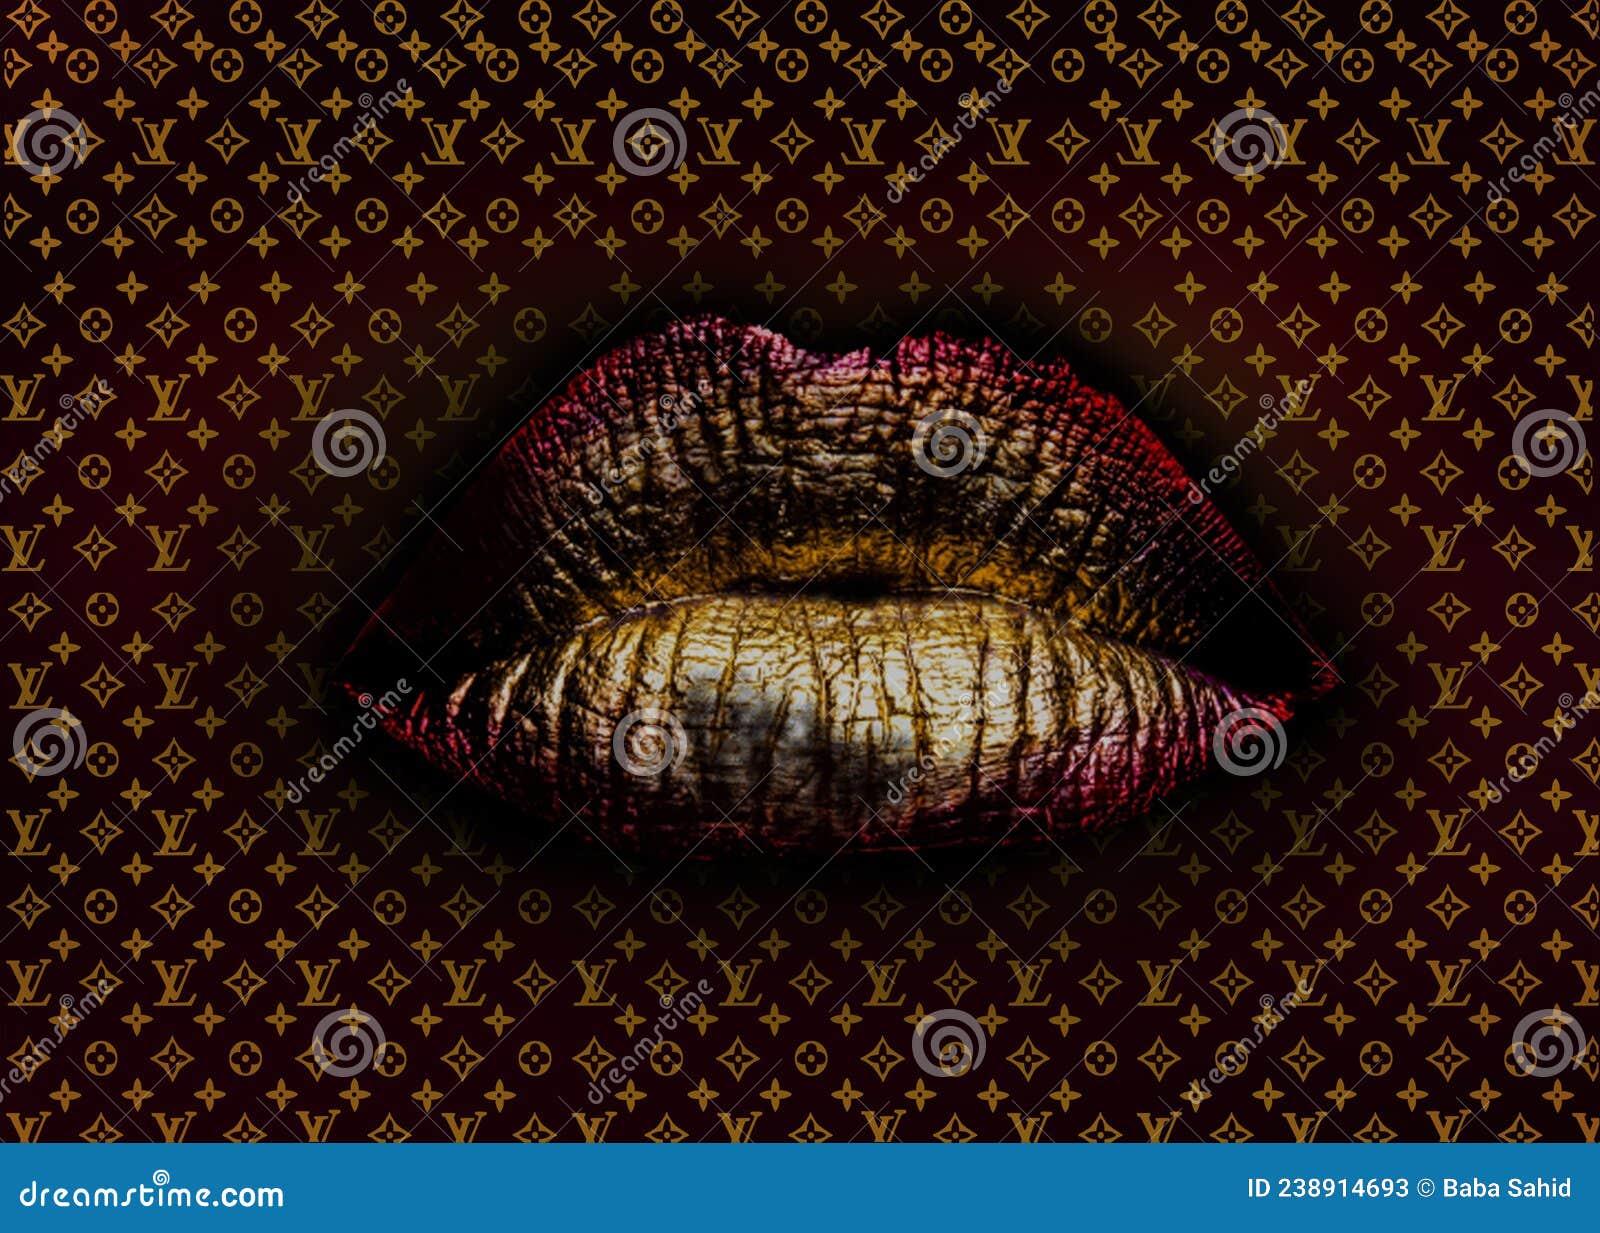 logo lv lips wallpaper